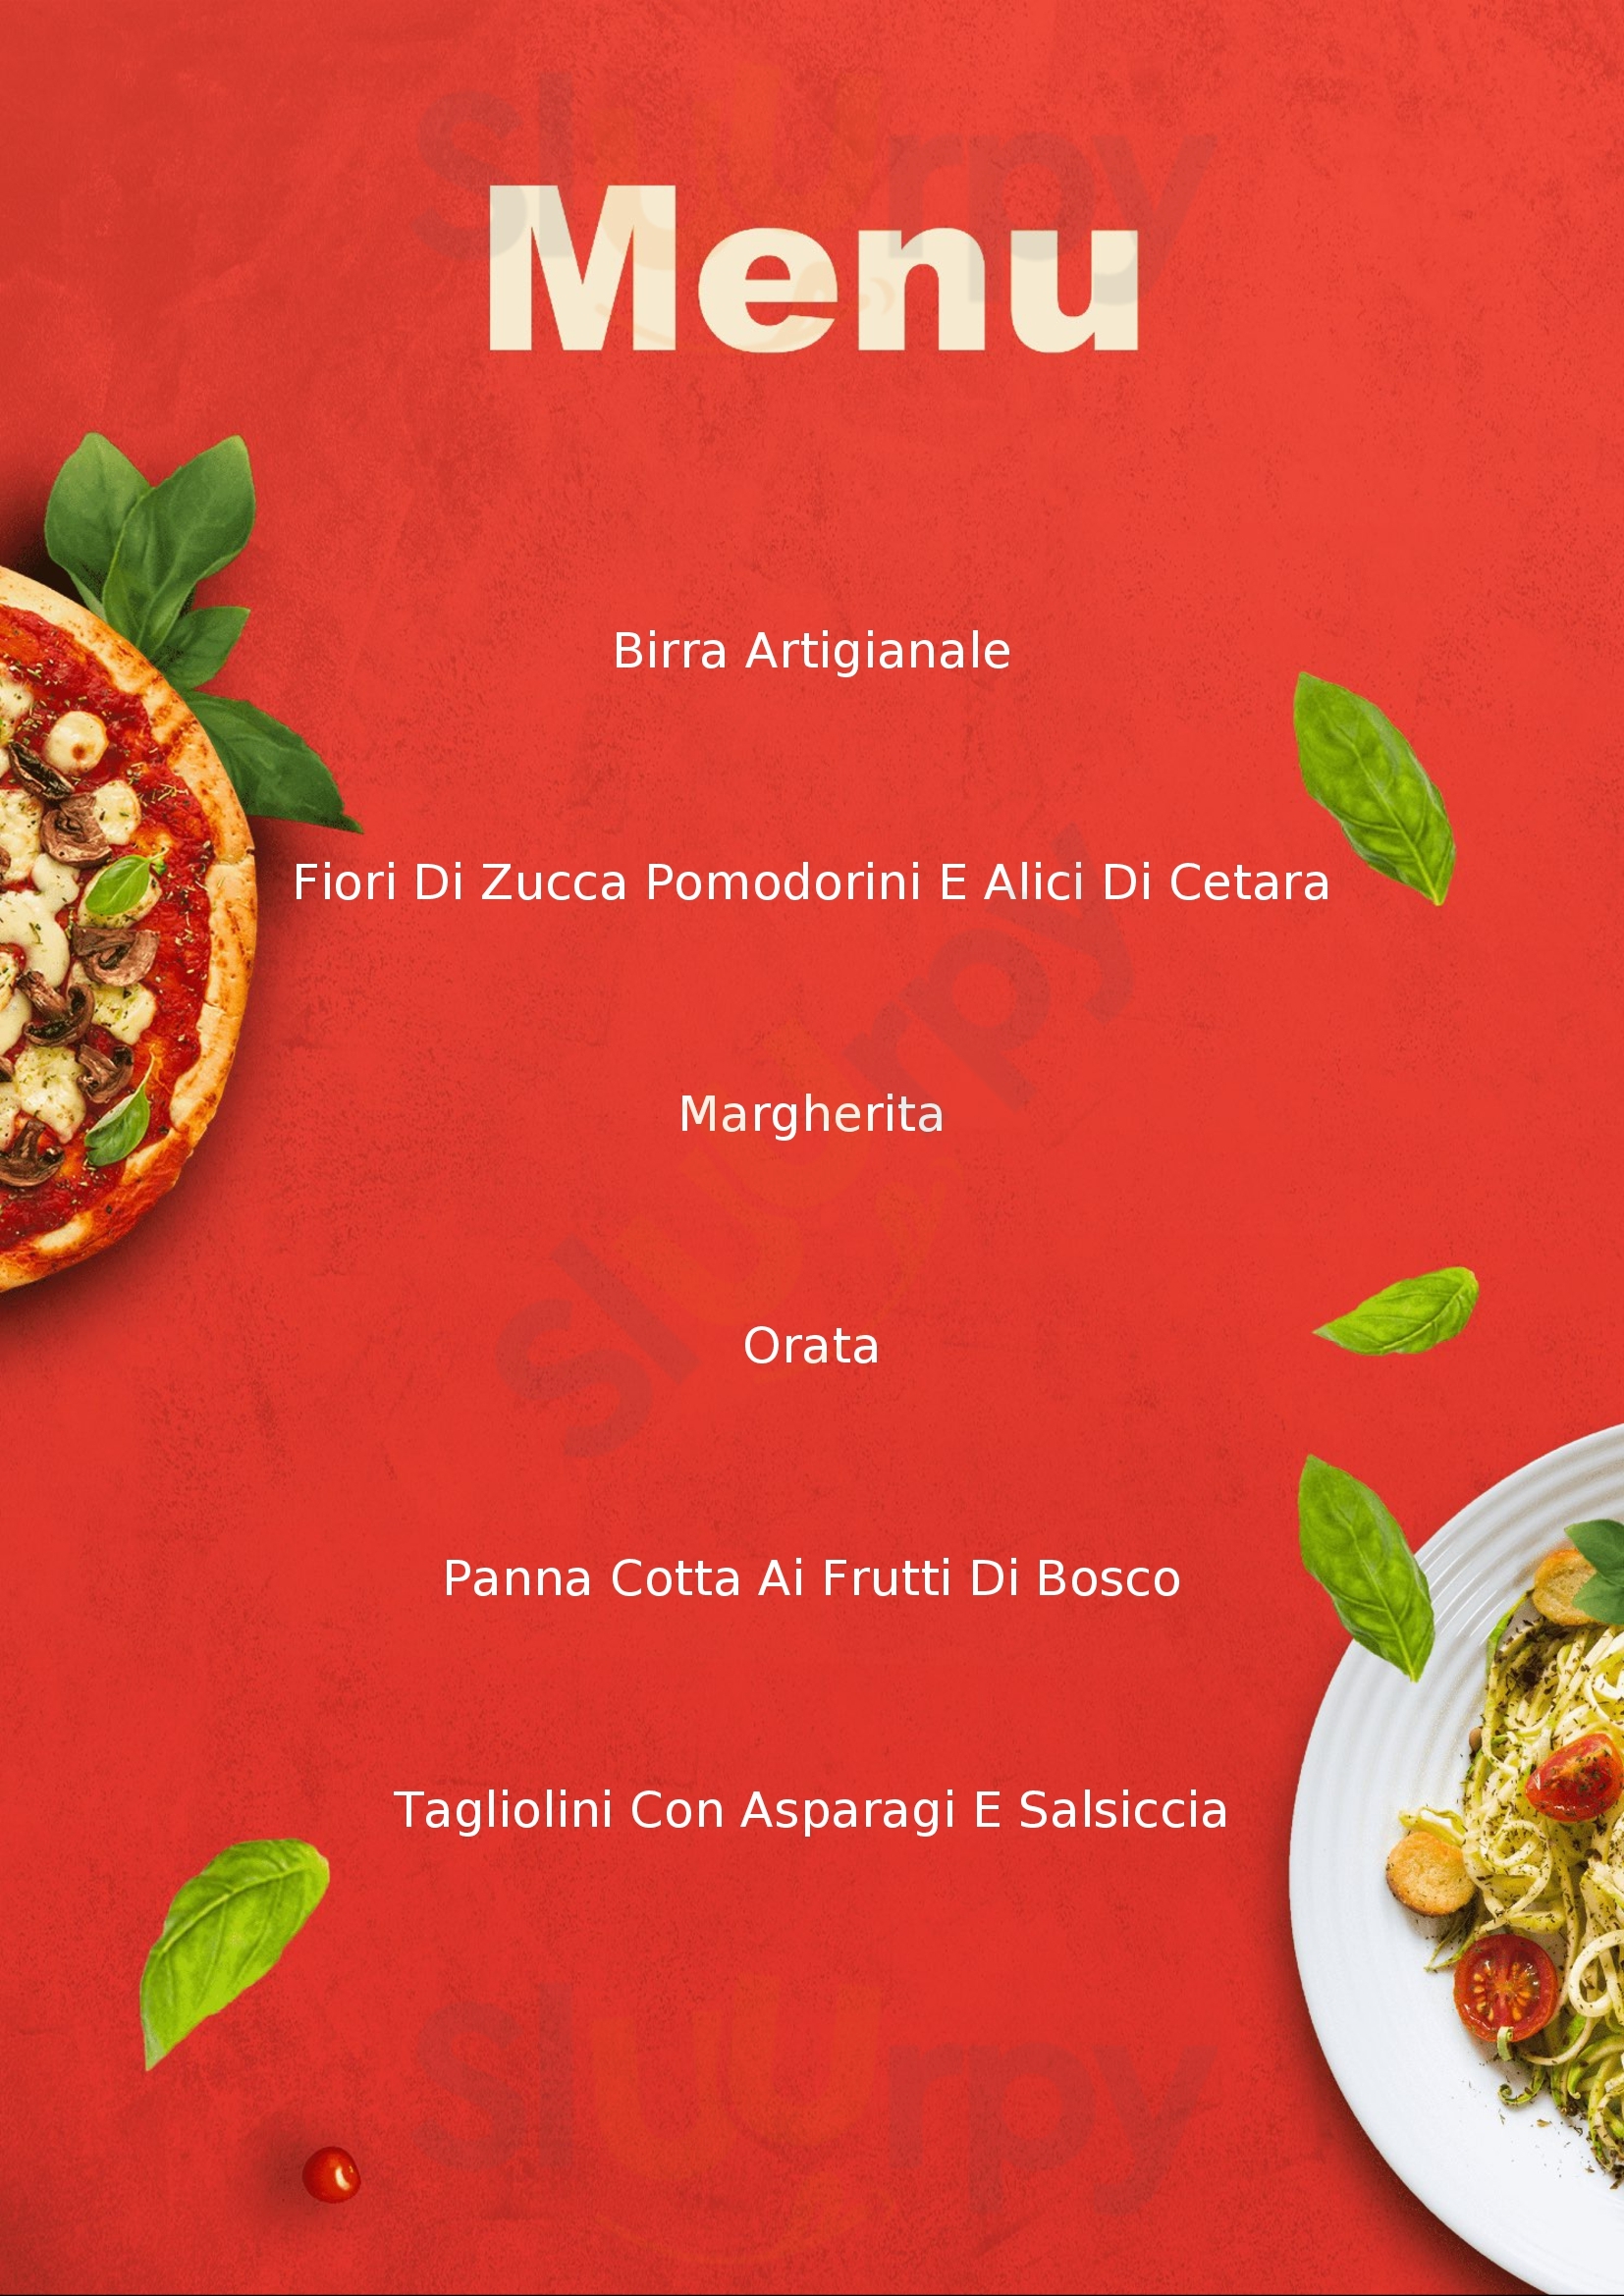 Trattoria Pizzeria La Pezza Alatri menù 1 pagina